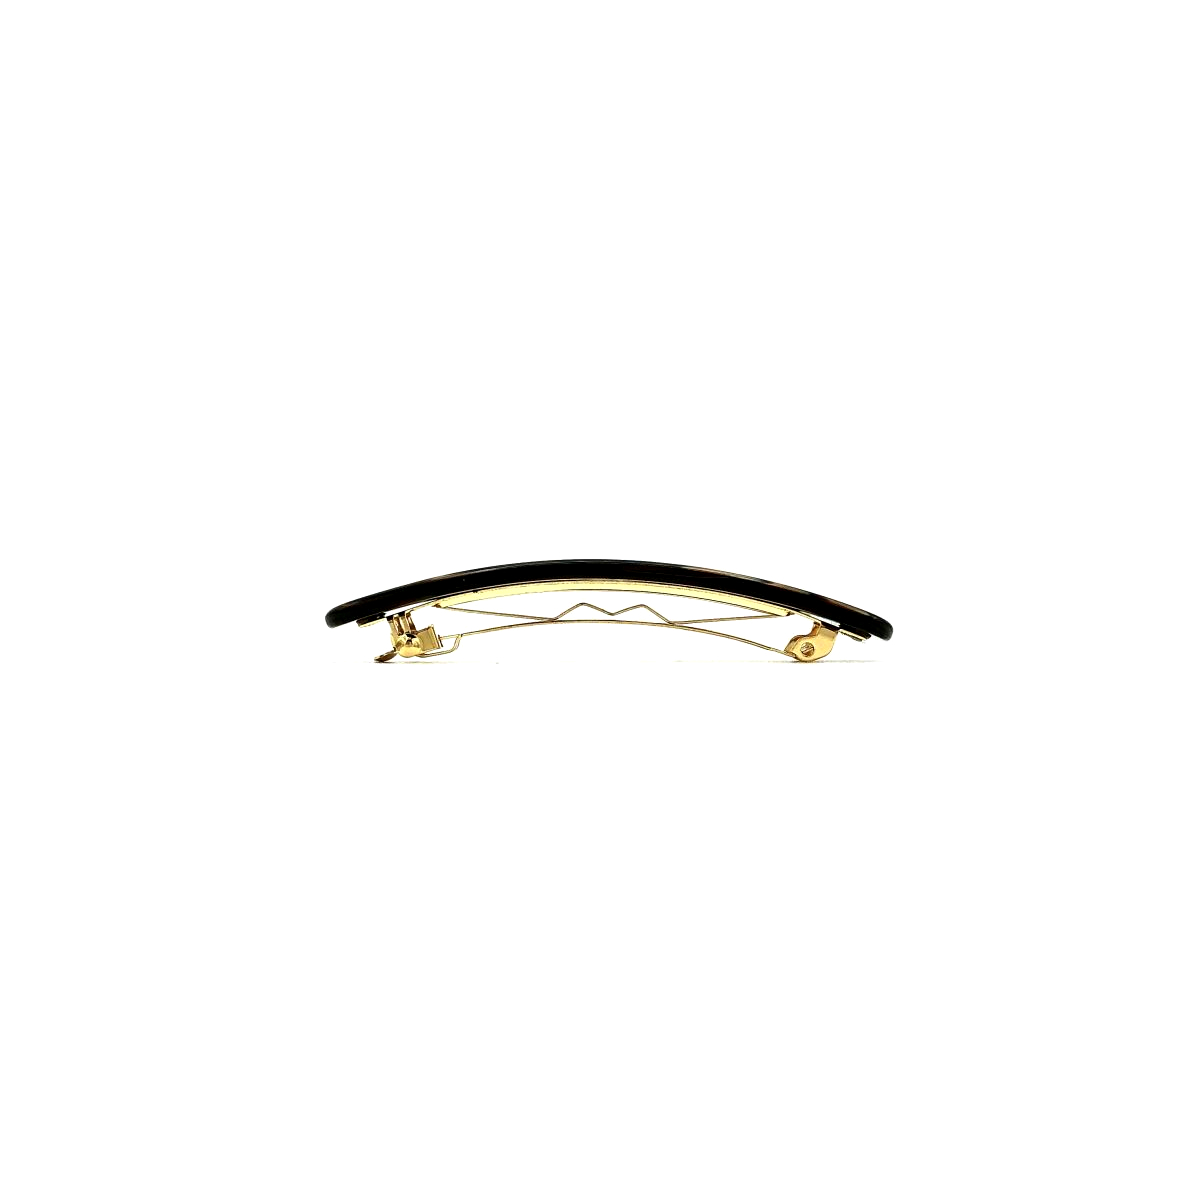 Haarspange dunkelbraun - klein, flach - 7,7 cm